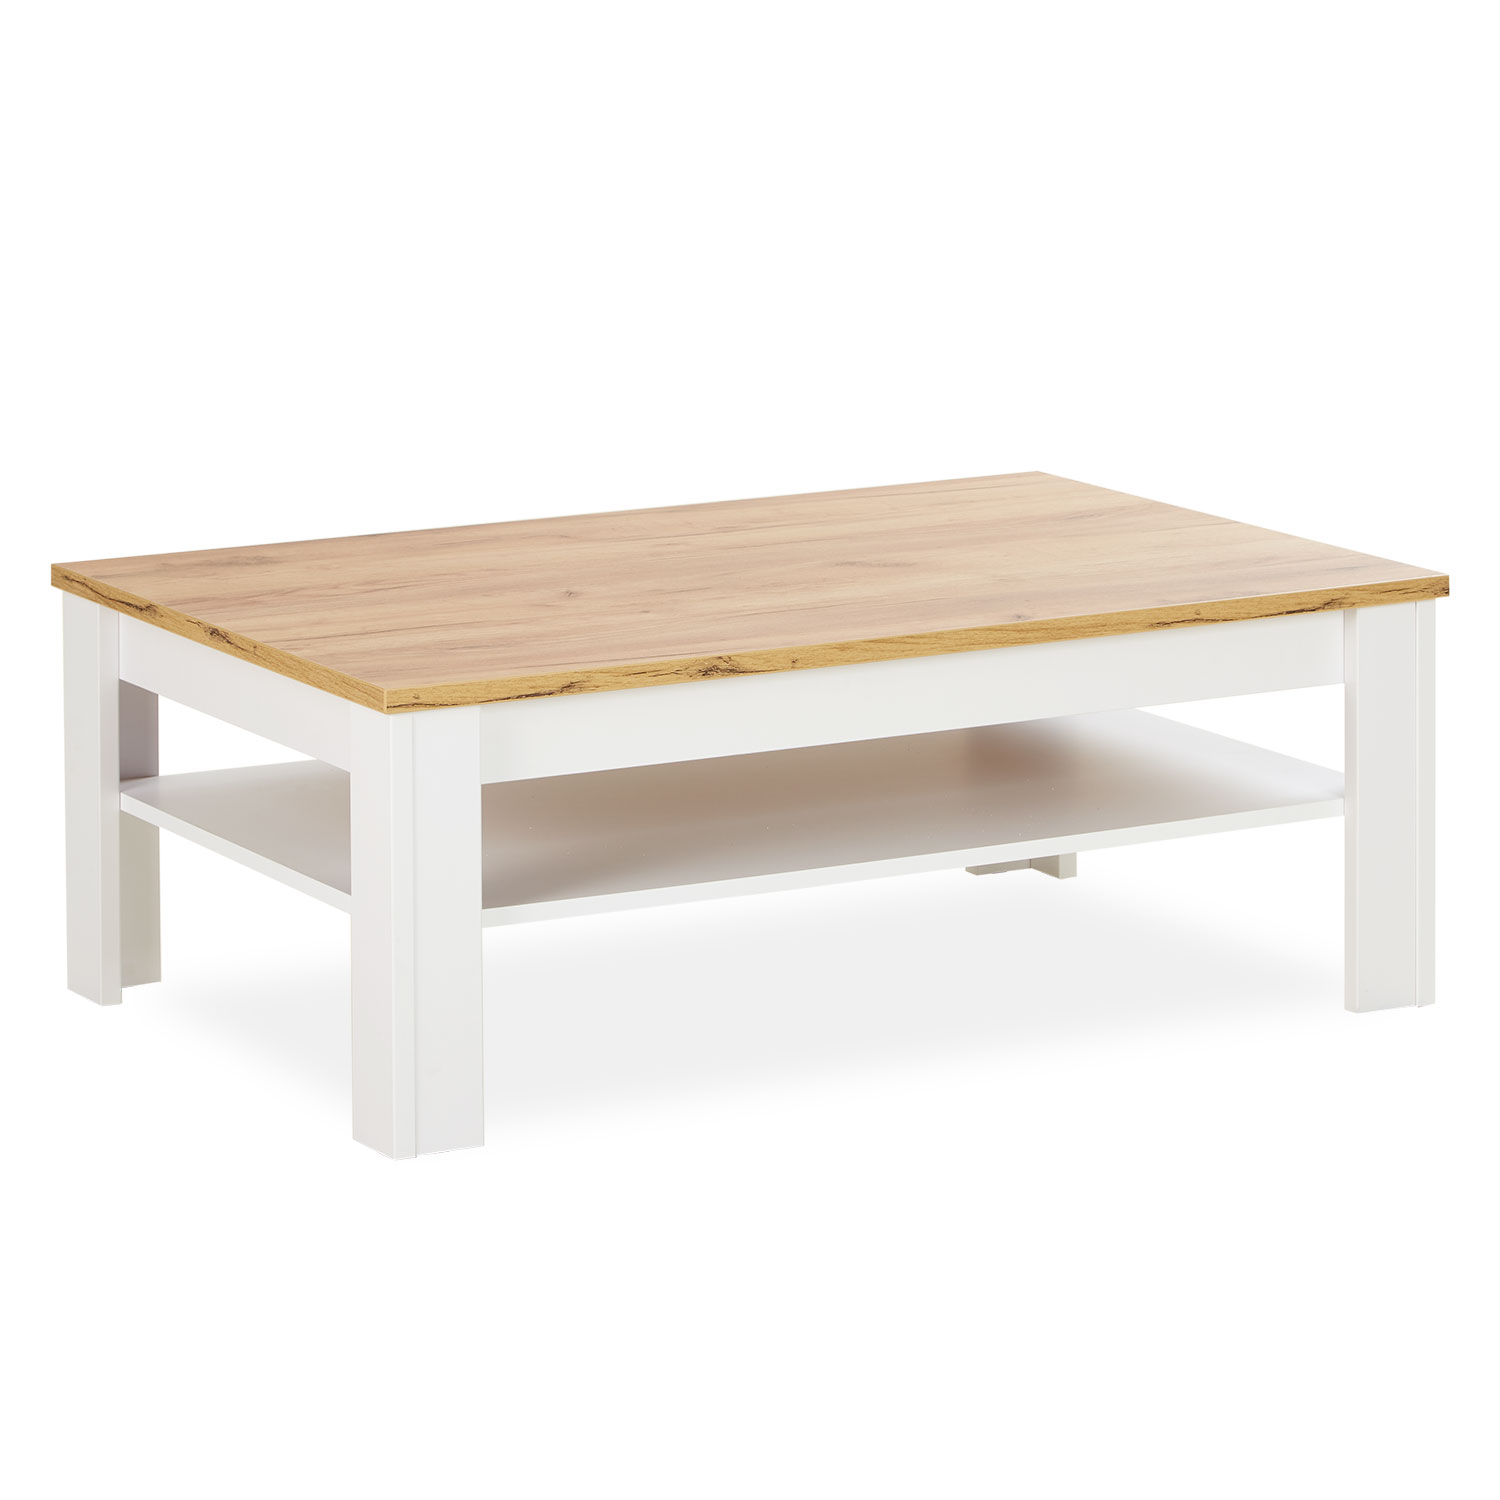 Couchtisch 110x70 cm Sofatisch Landhaus Weiß Tisch Holz Wohnzimmertisch Beistelltisch Holztisch Stauraum